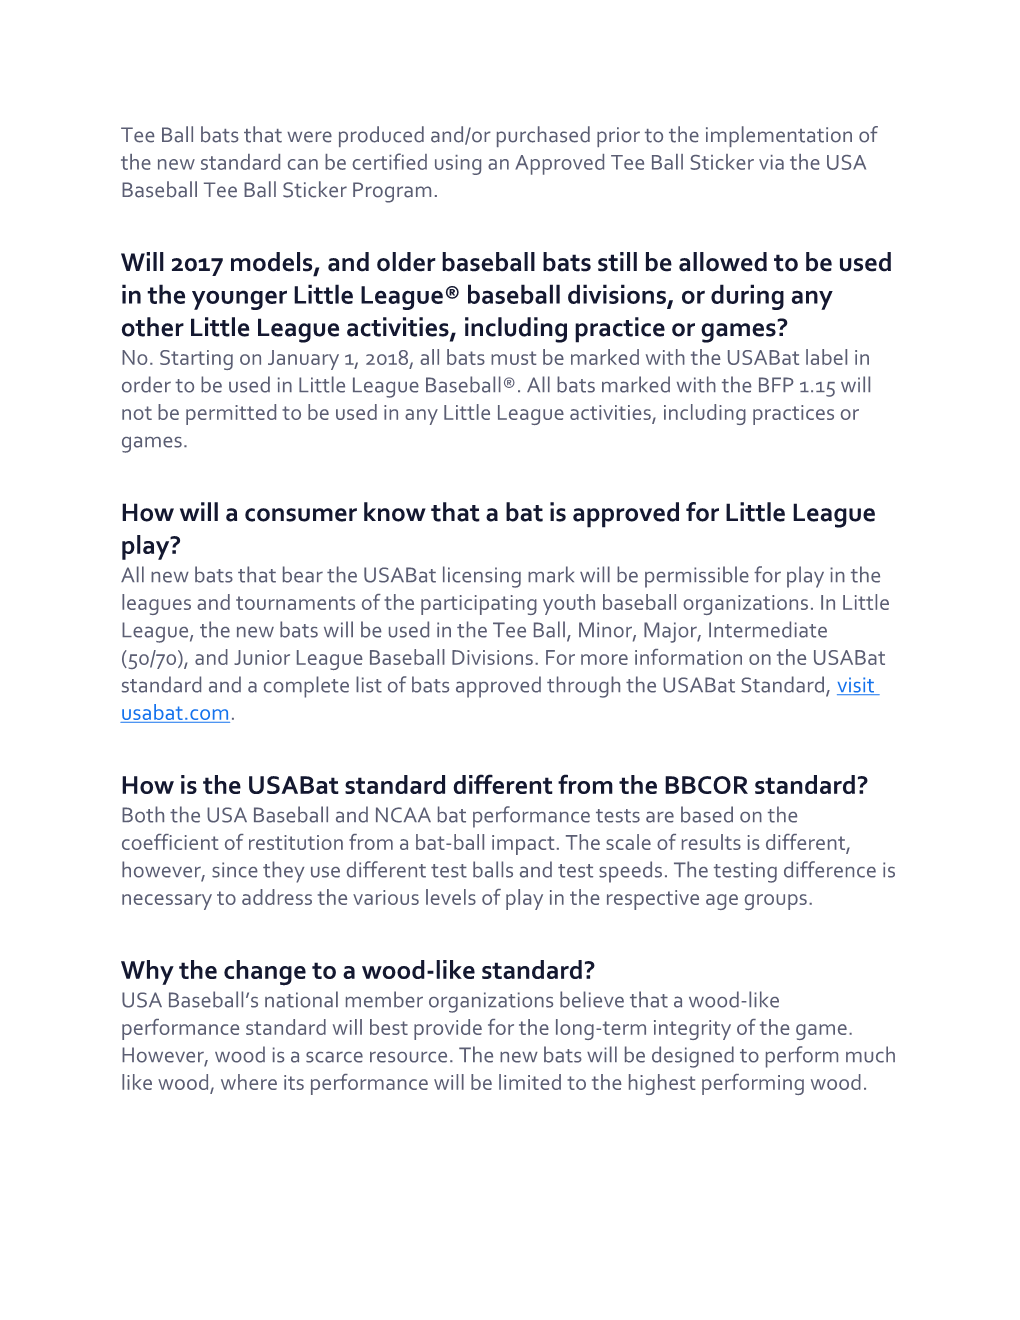 USA Baseball Bat Standard FAQ